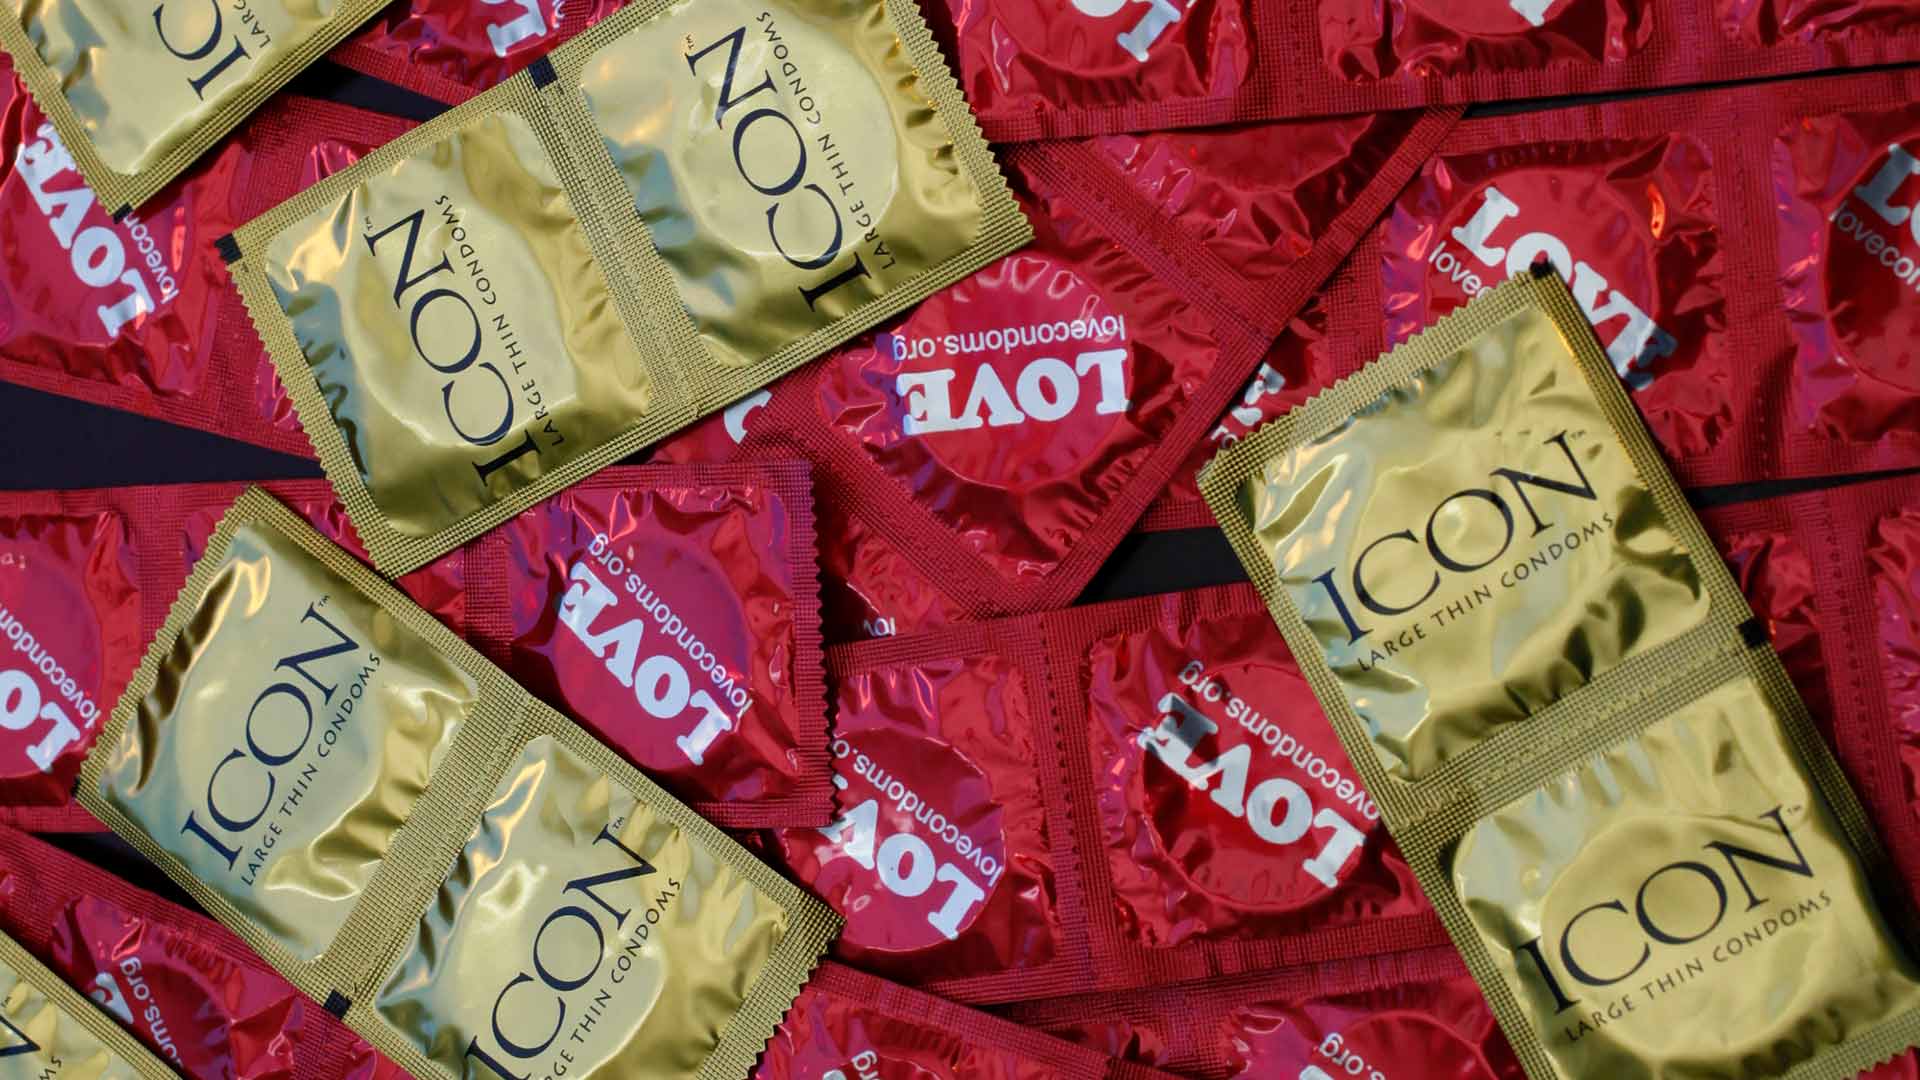 Sanidad dona 100.000 kits con preservativos para distribuir en conciertos y festivales